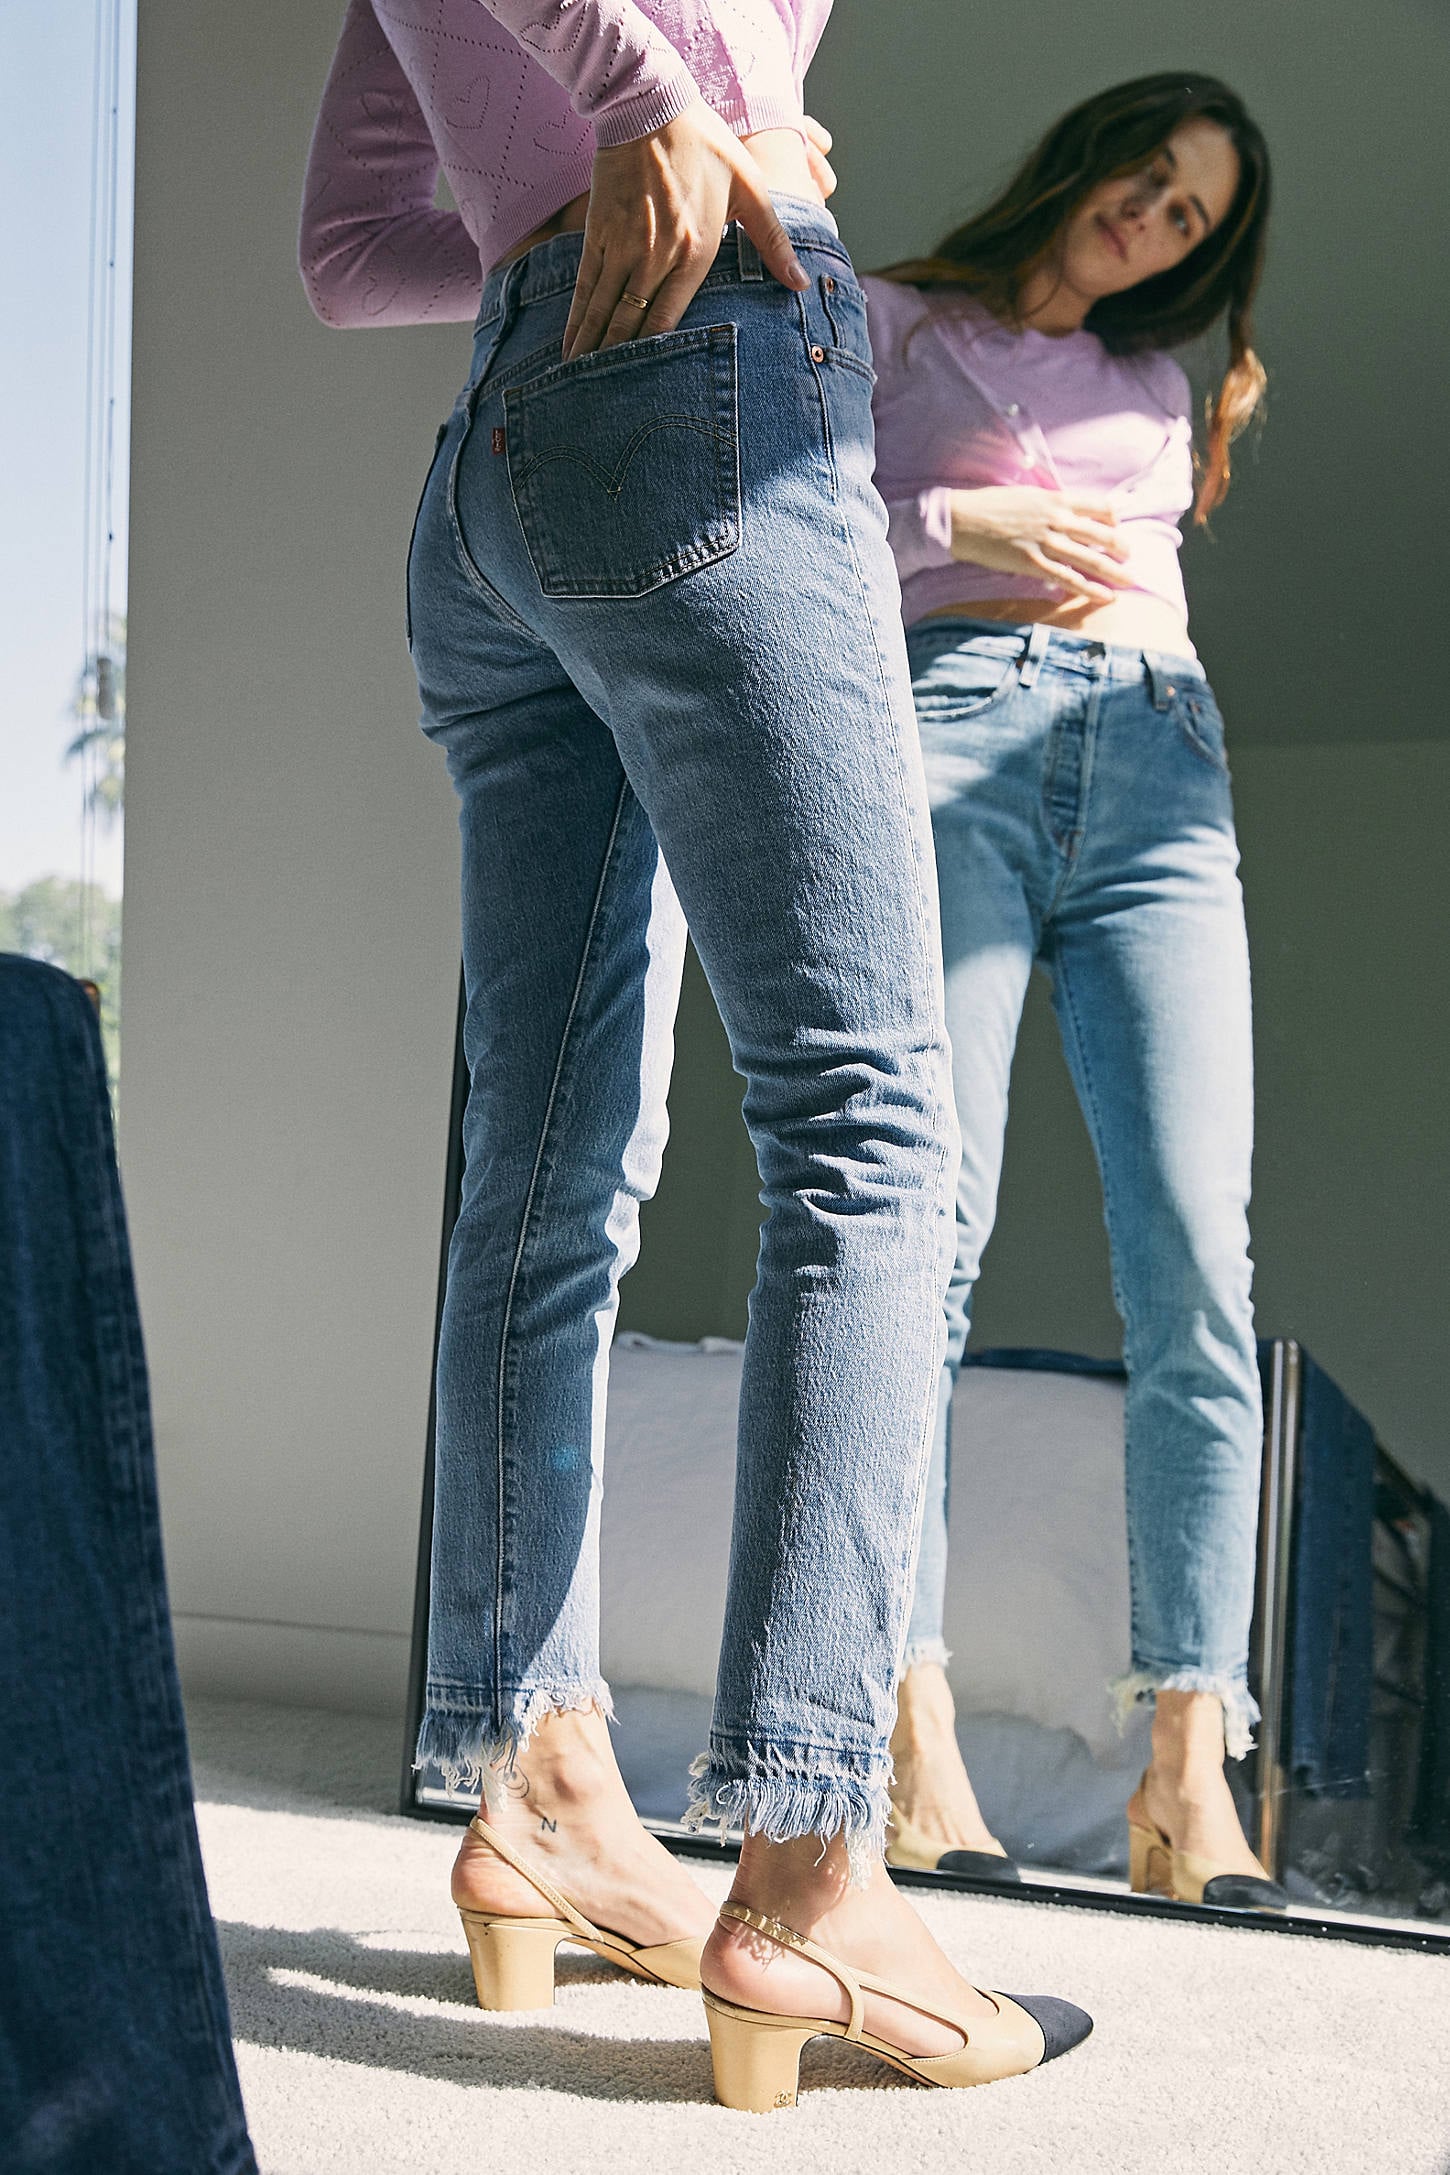 levis 591 jeans